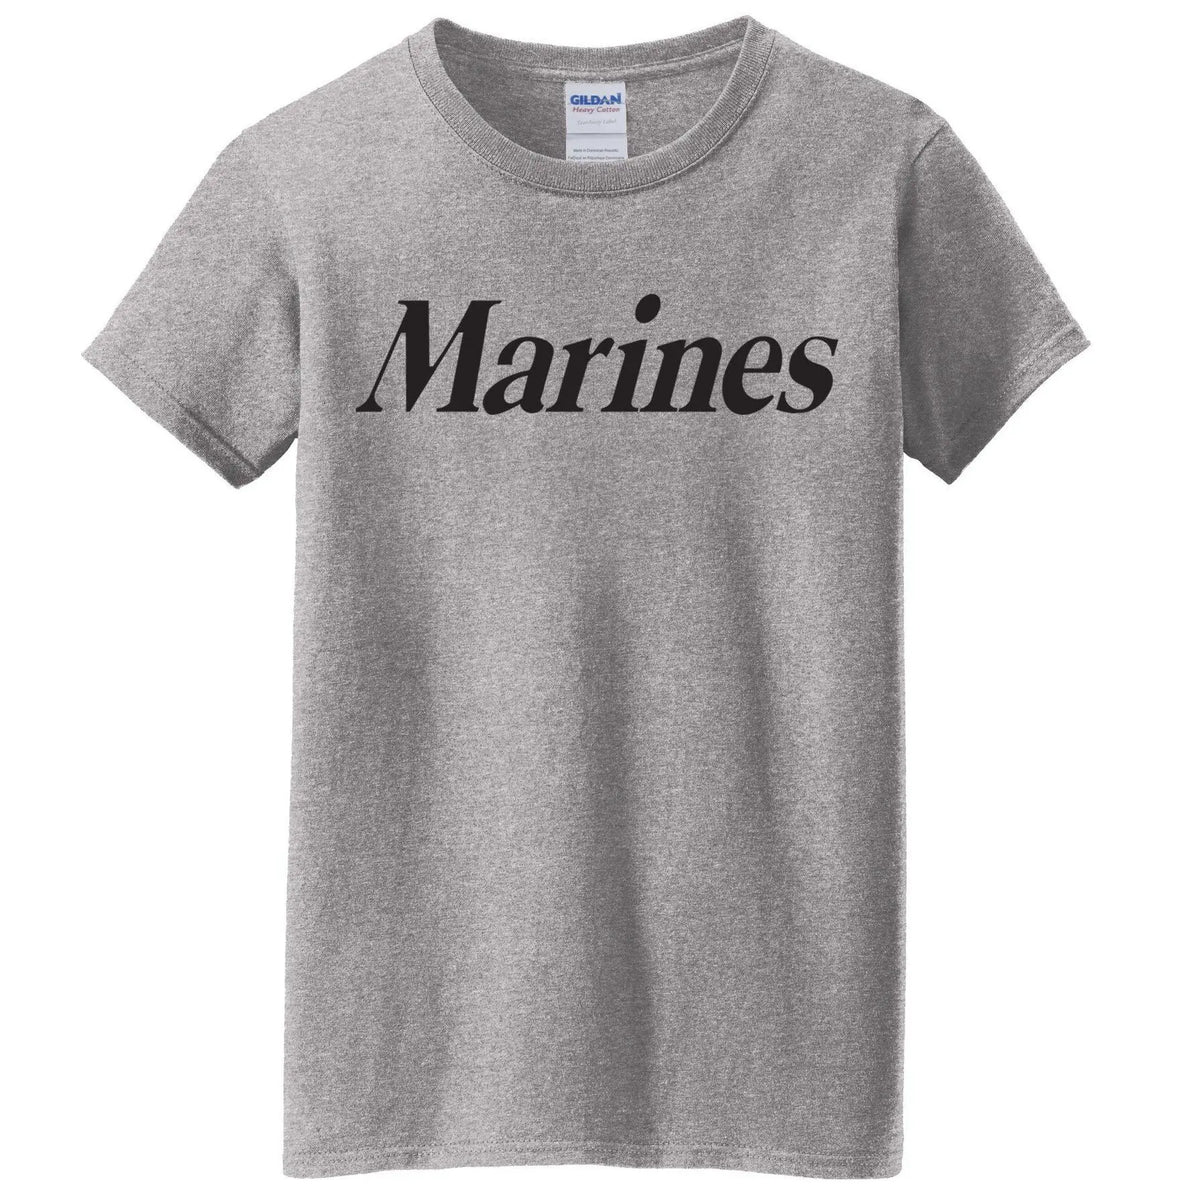 Marines Women's T-Shirt - Marine Corps Direct